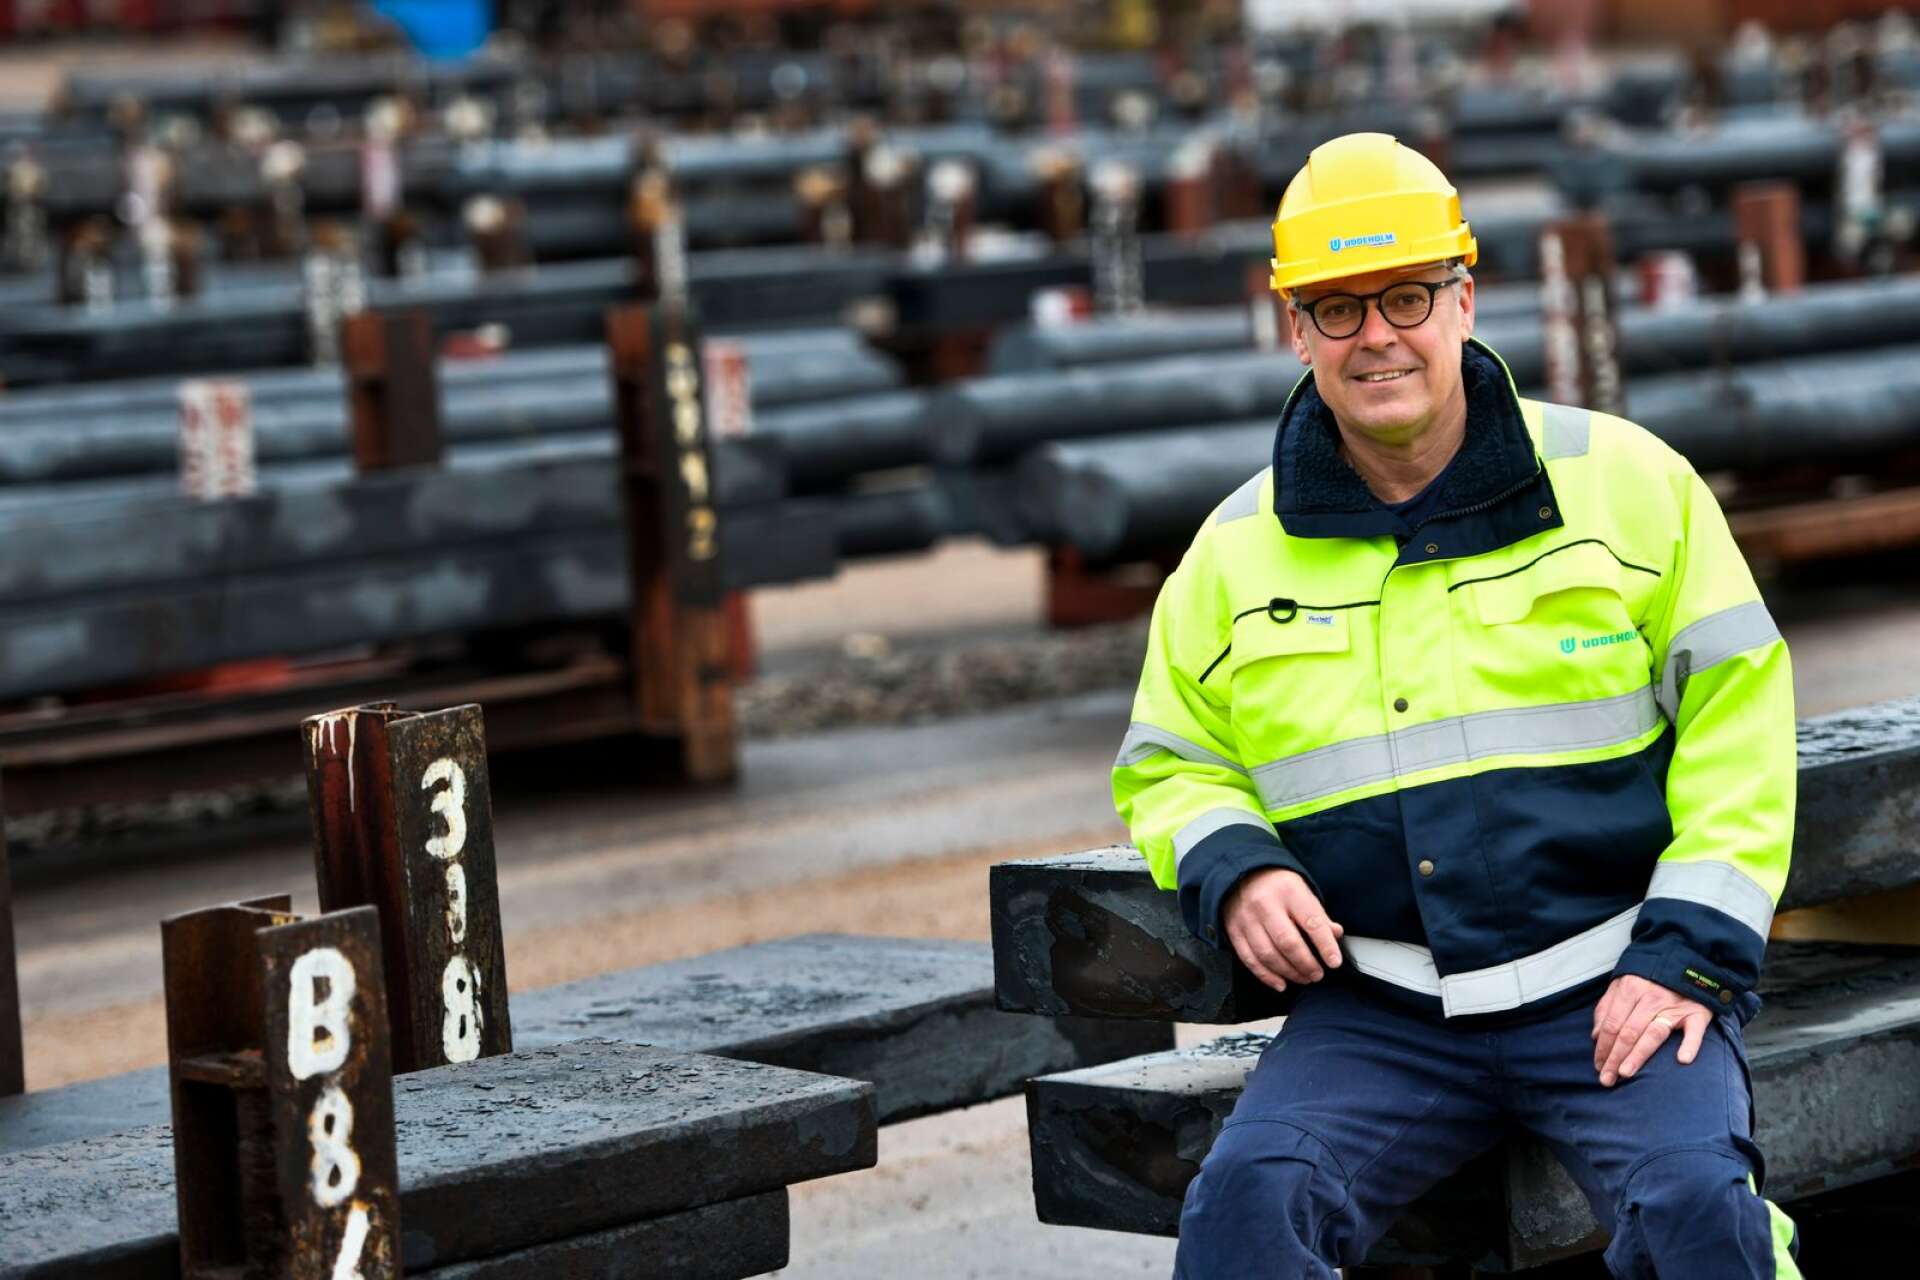 Uddeholm levererar 55000 ton stål per år till ett värde av 3 miljarder kronor, berättar kommunikationschef Robert Gustafsson. Han visar NWT några centrala delar av verket, men det finns förstås mycket mer. Ska man se hela det stora verksområdet blir det en runda på en mil.